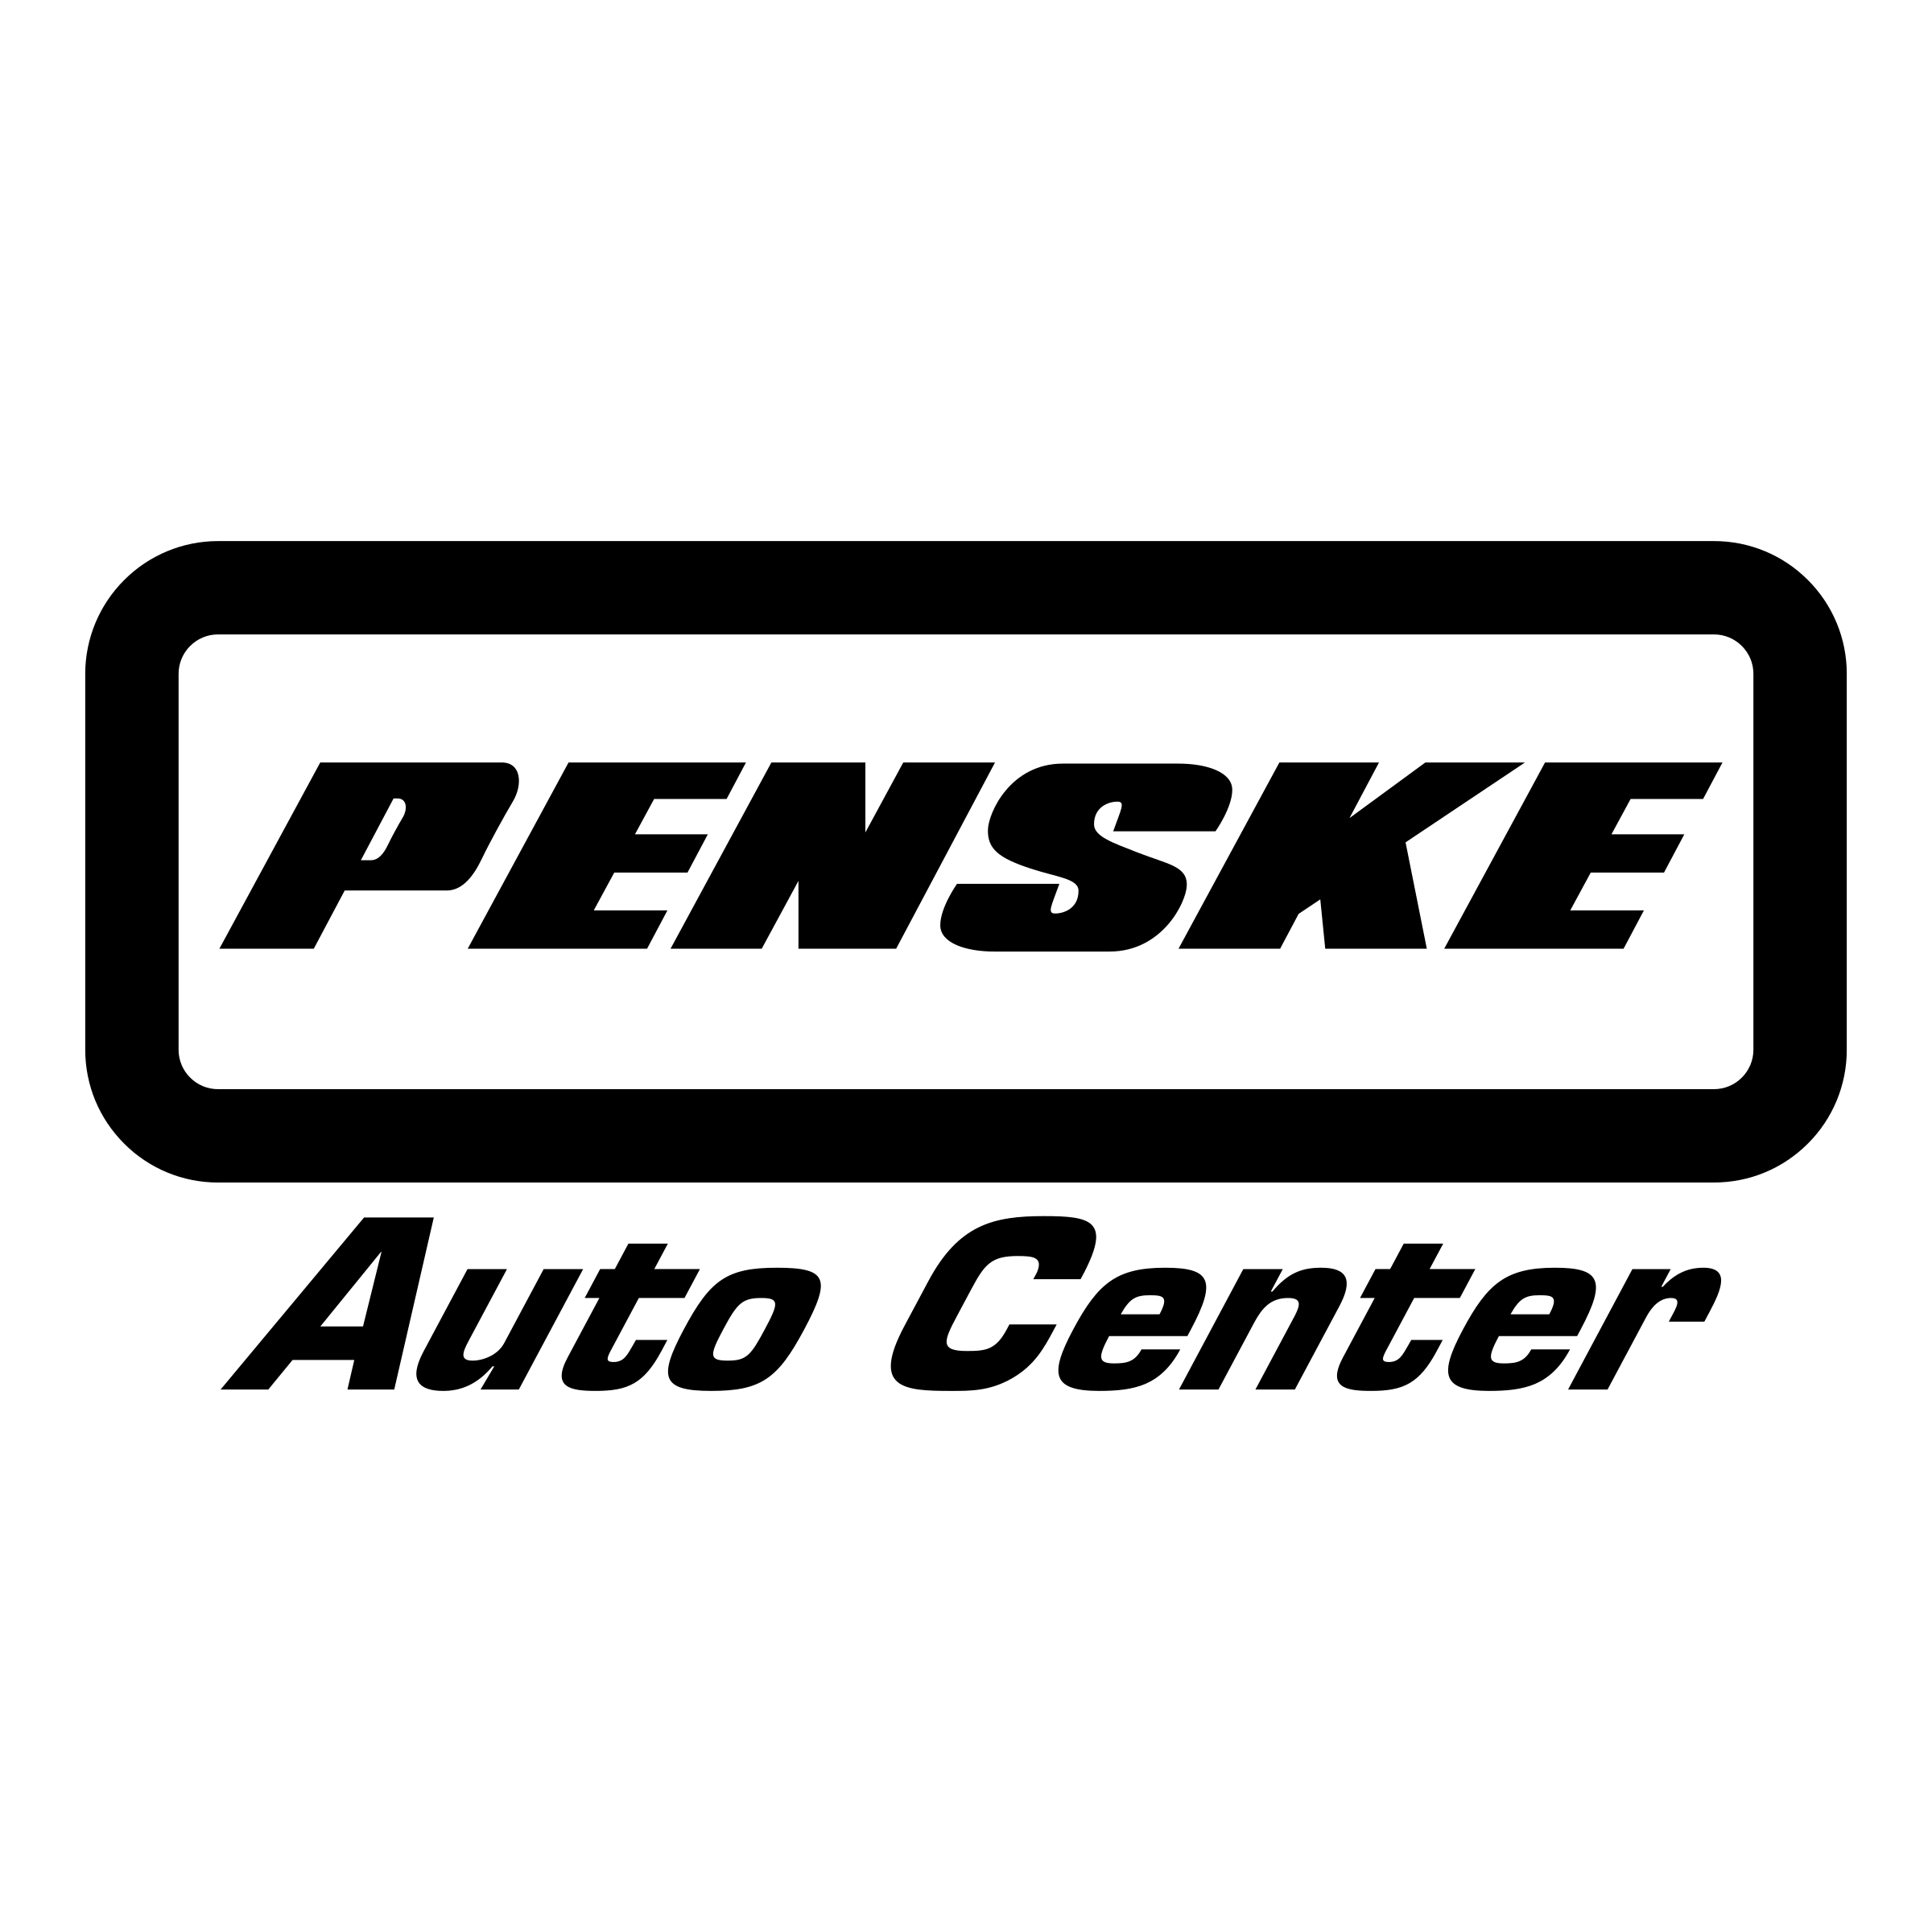 Auto Center Logo - Penske Auto Center Logo PNG Transparent & SVG Vector - Freebie Supply